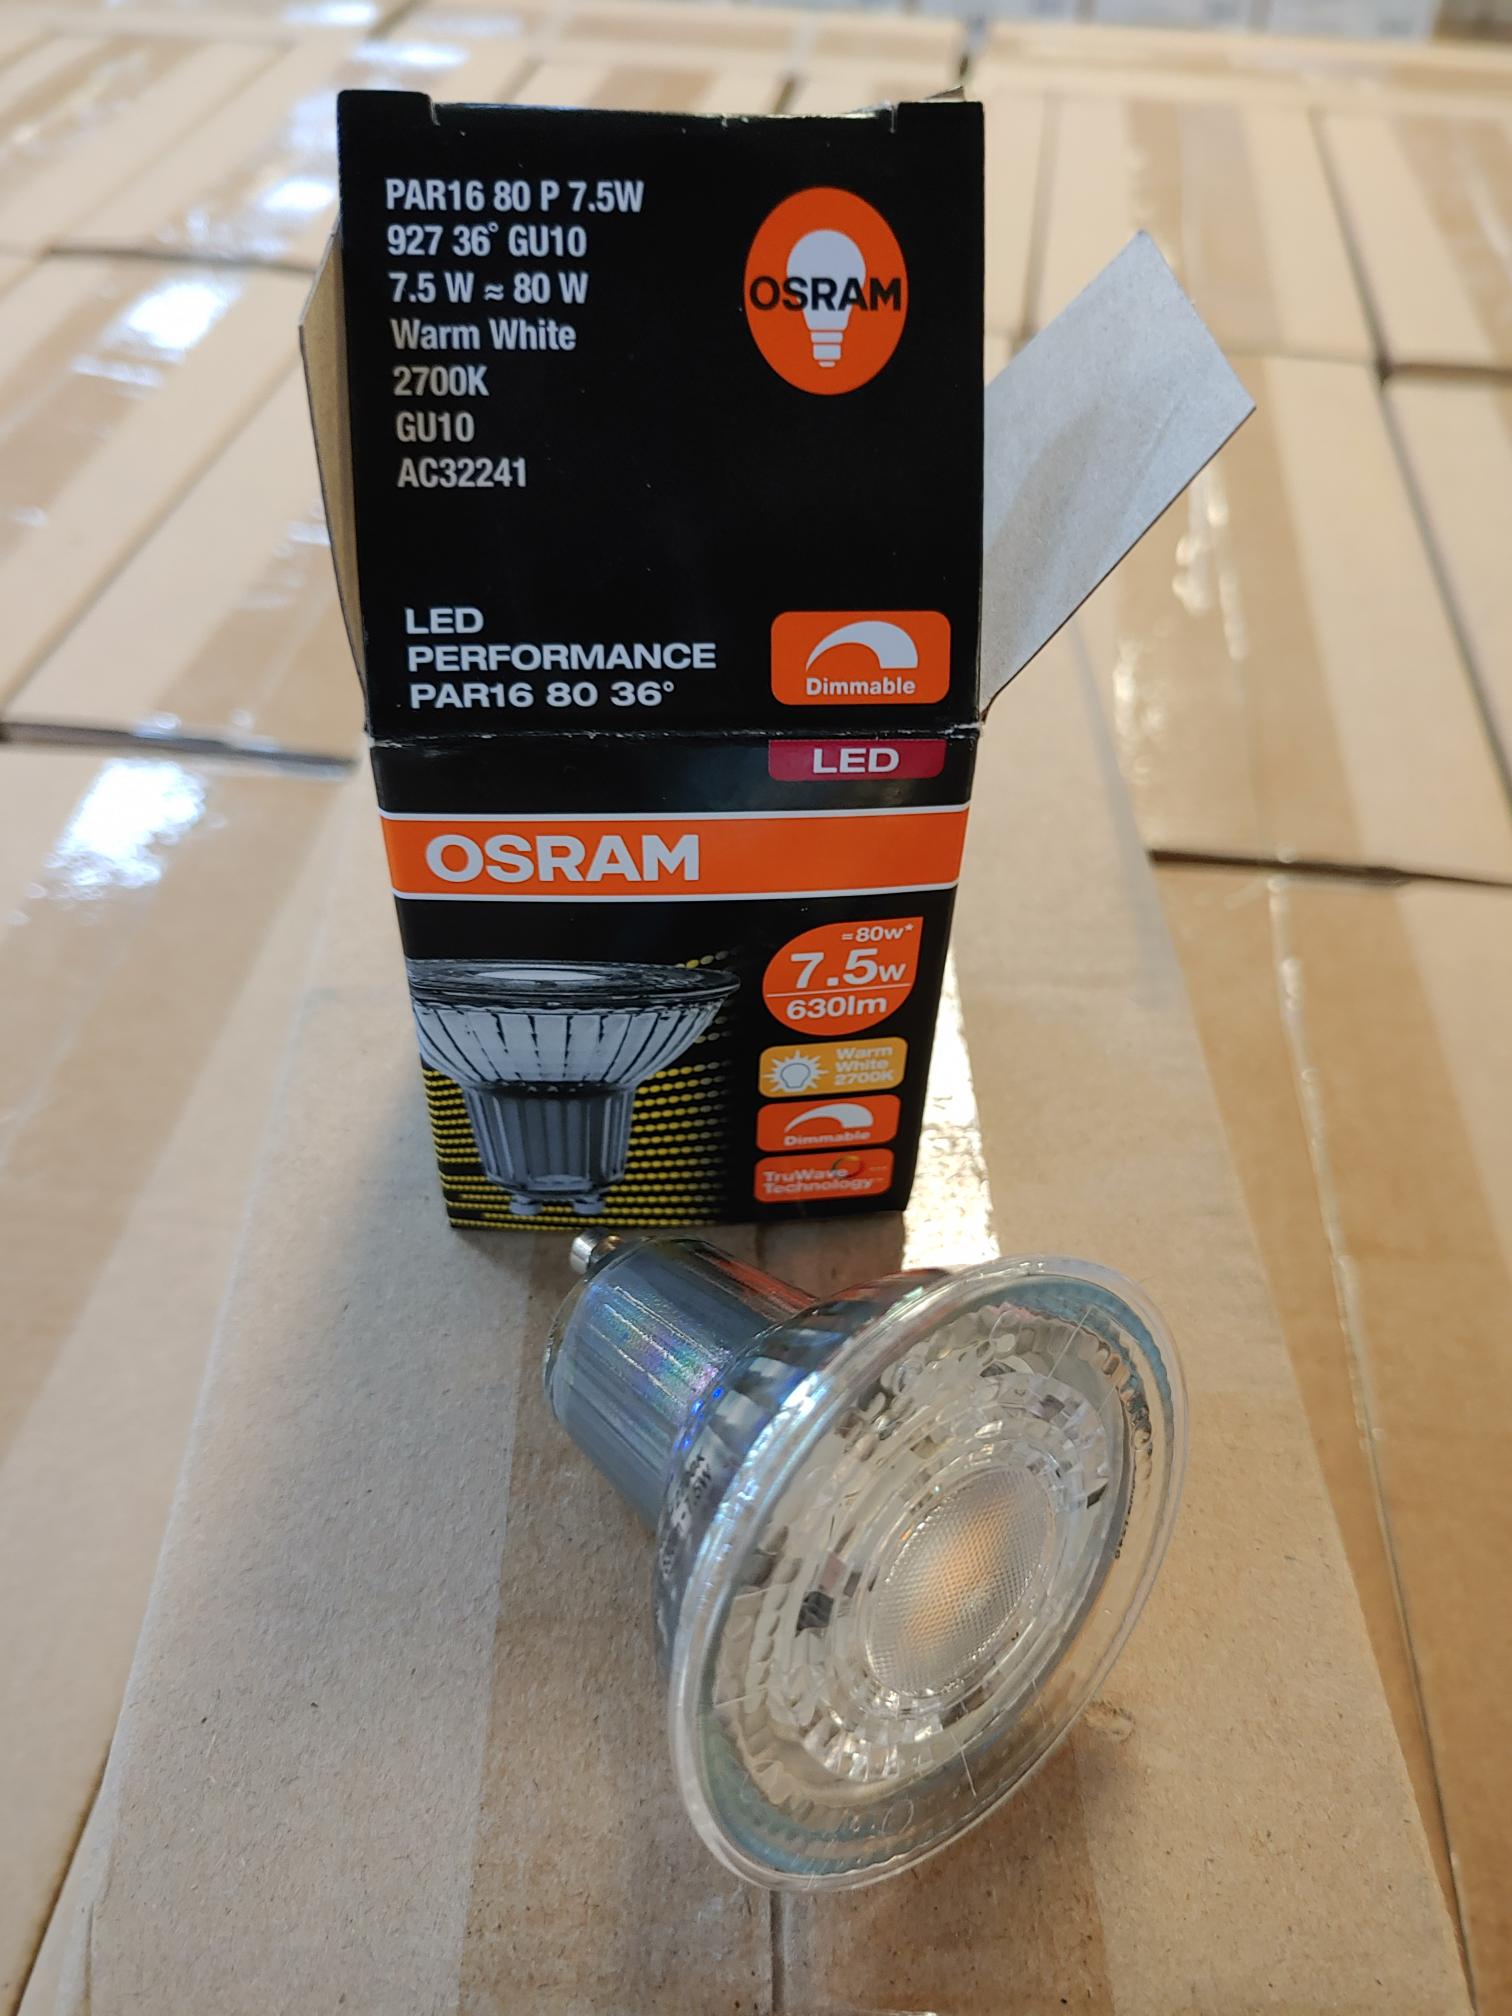 OSRAM Lampadina LED PAR16 36°, 80W 4000K GU10